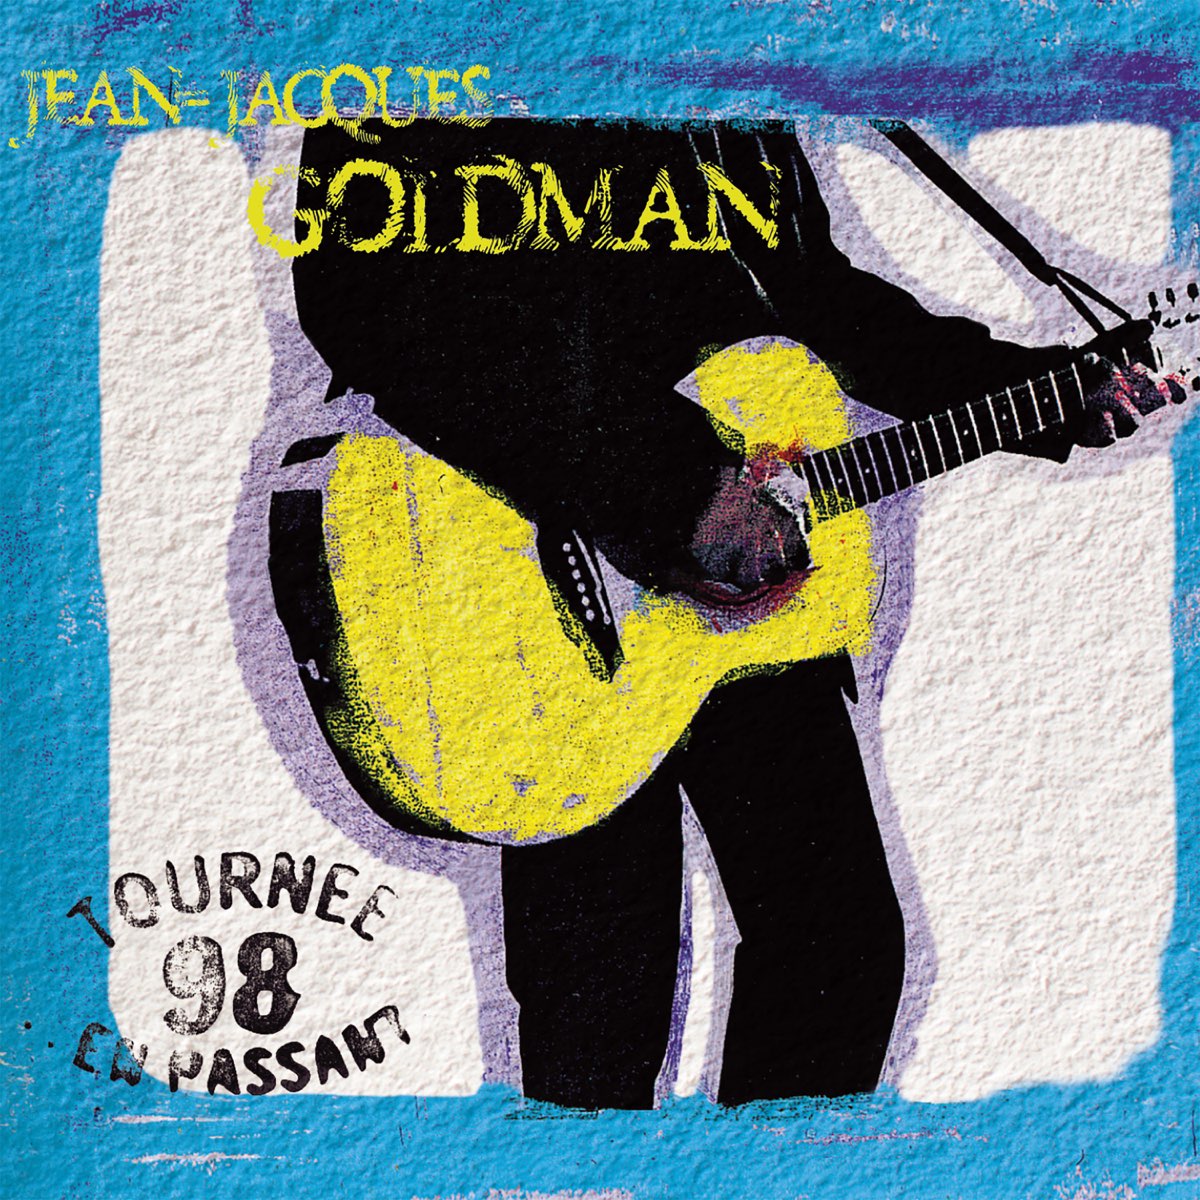 Tournée 98 - En passant (Live) by Jean-Jacques Goldman on Apple Music